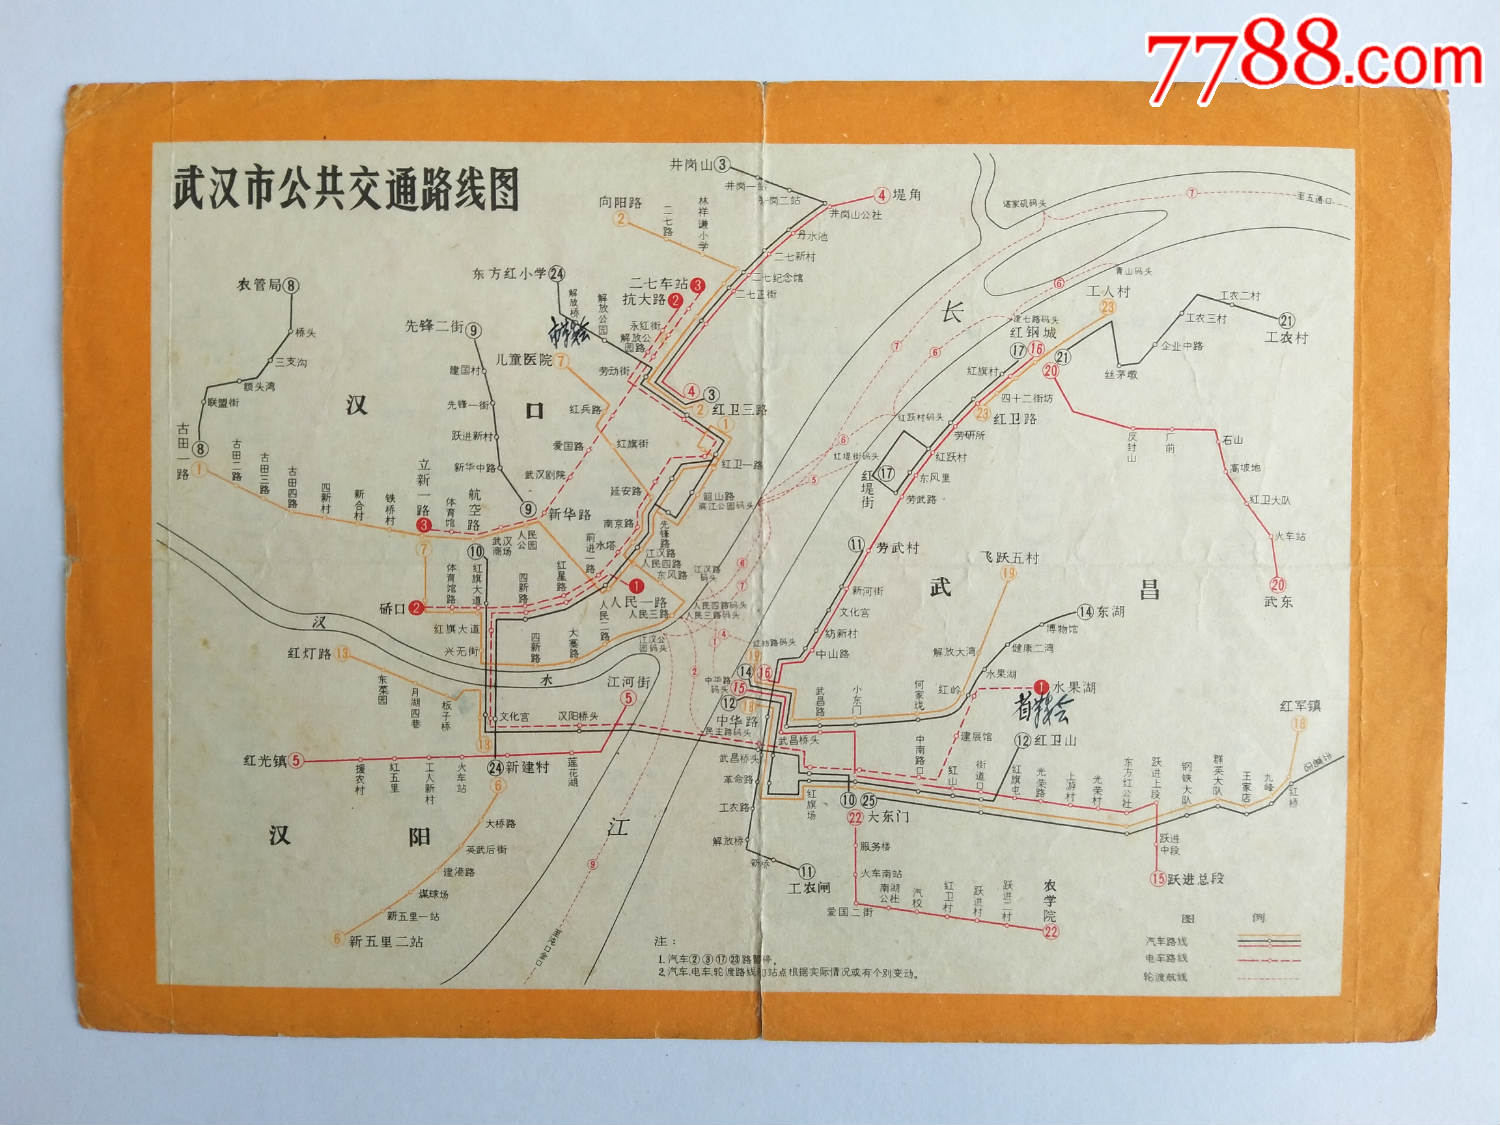 武汉市公共交通路线图(文化大革命红*兵"串联"时用图)带语录